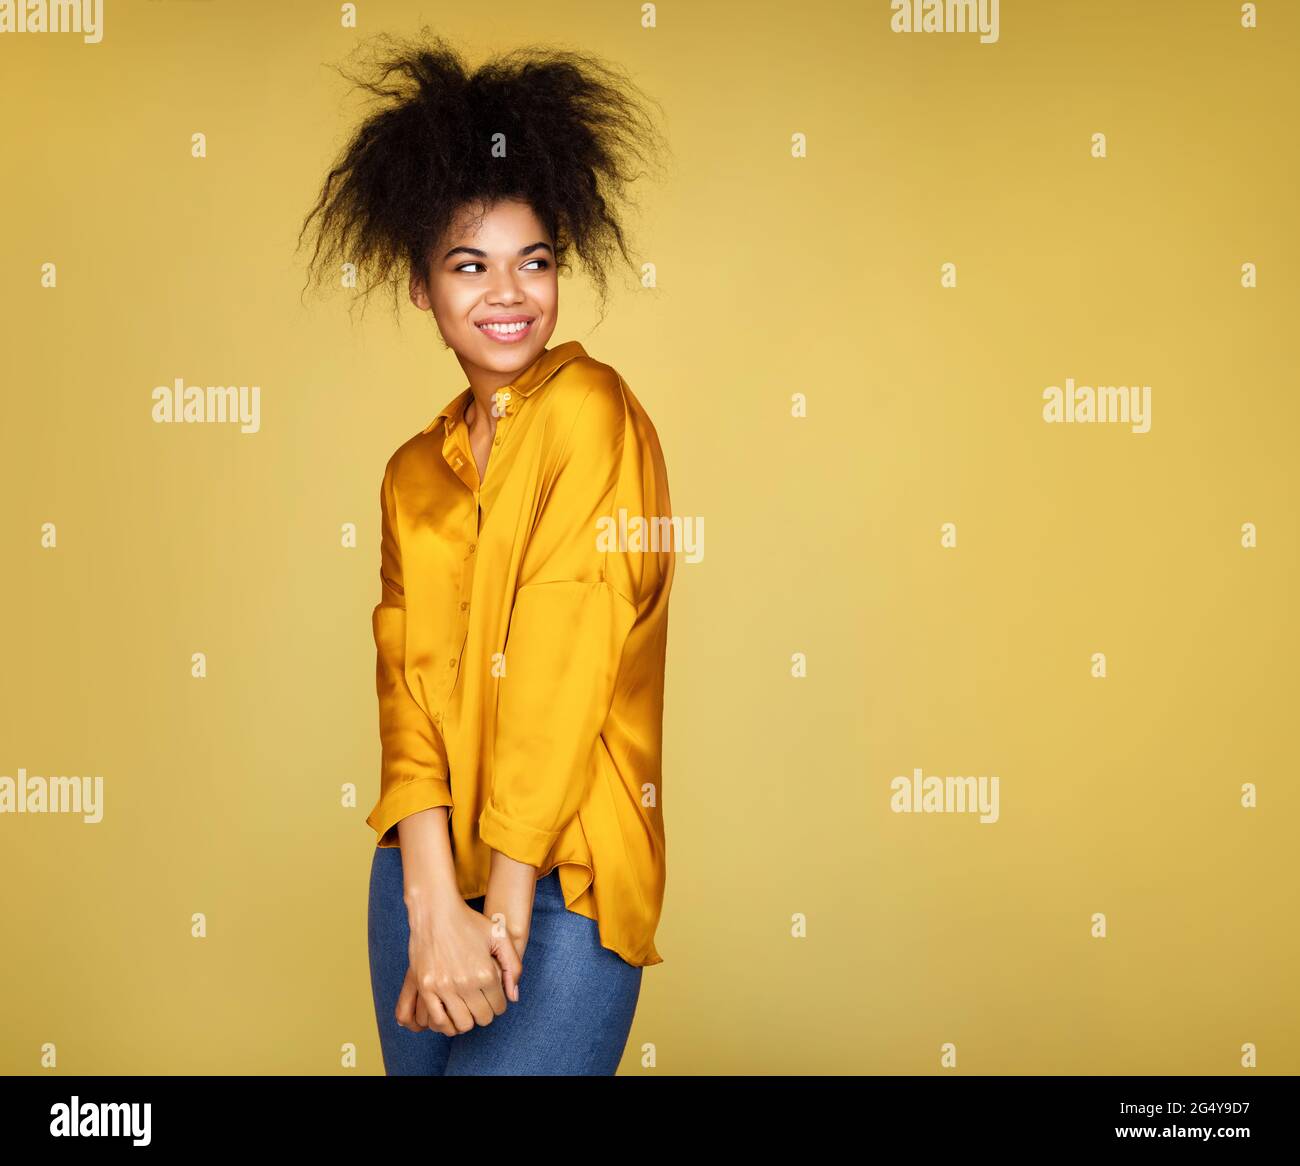 Attraktive schüchterne Mädchen, Blick beiseite. Foto von afroamerikanischen Mädchen auf gelbem Hintergrund Stockfoto